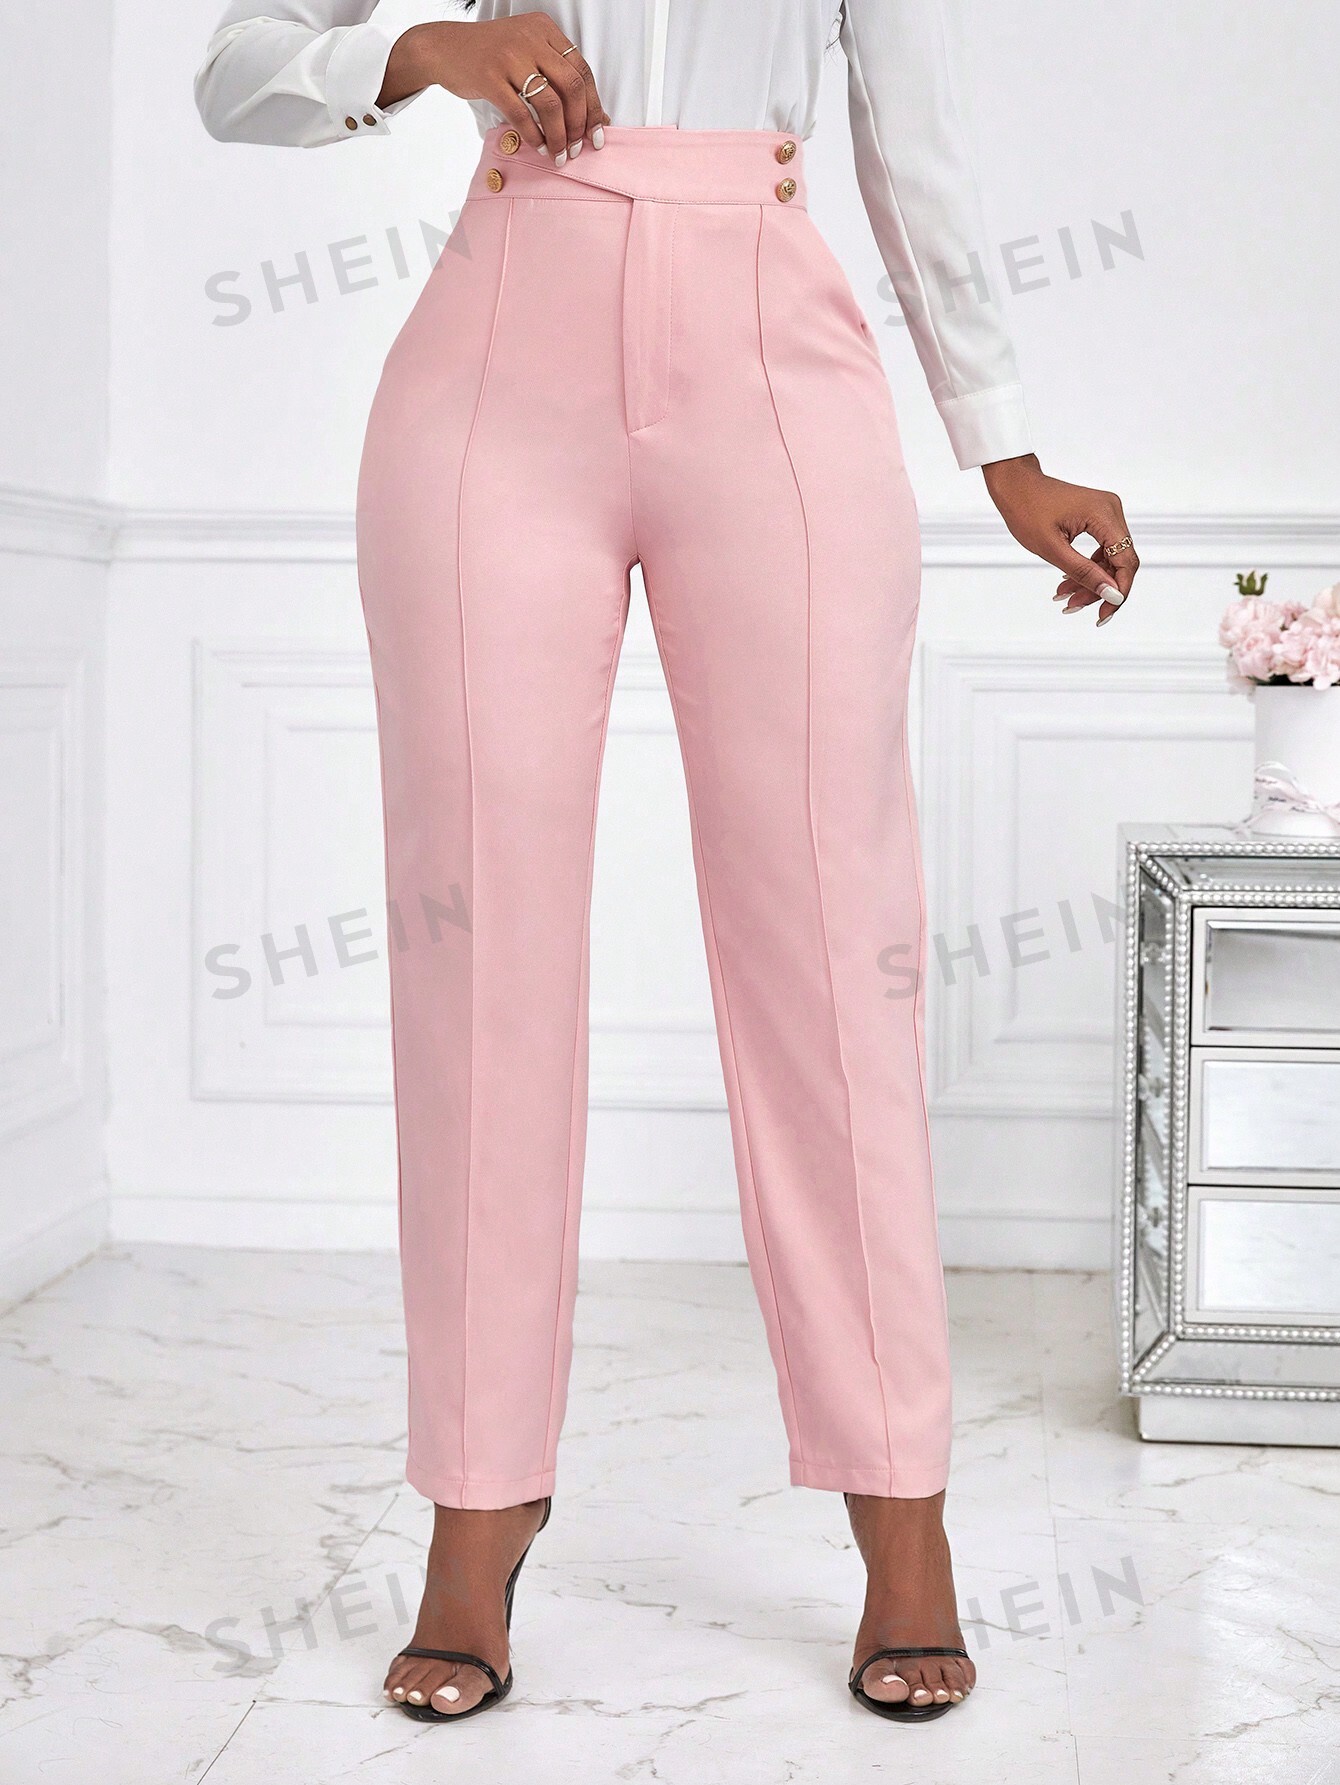 SHEIN Lady Женские зауженные брюки с завышенной талией, розовый женские шерстяные шаровары осень и зима новый стиль женские брюки с высокой талией повседневные брюки спортивные брюки женские брюки